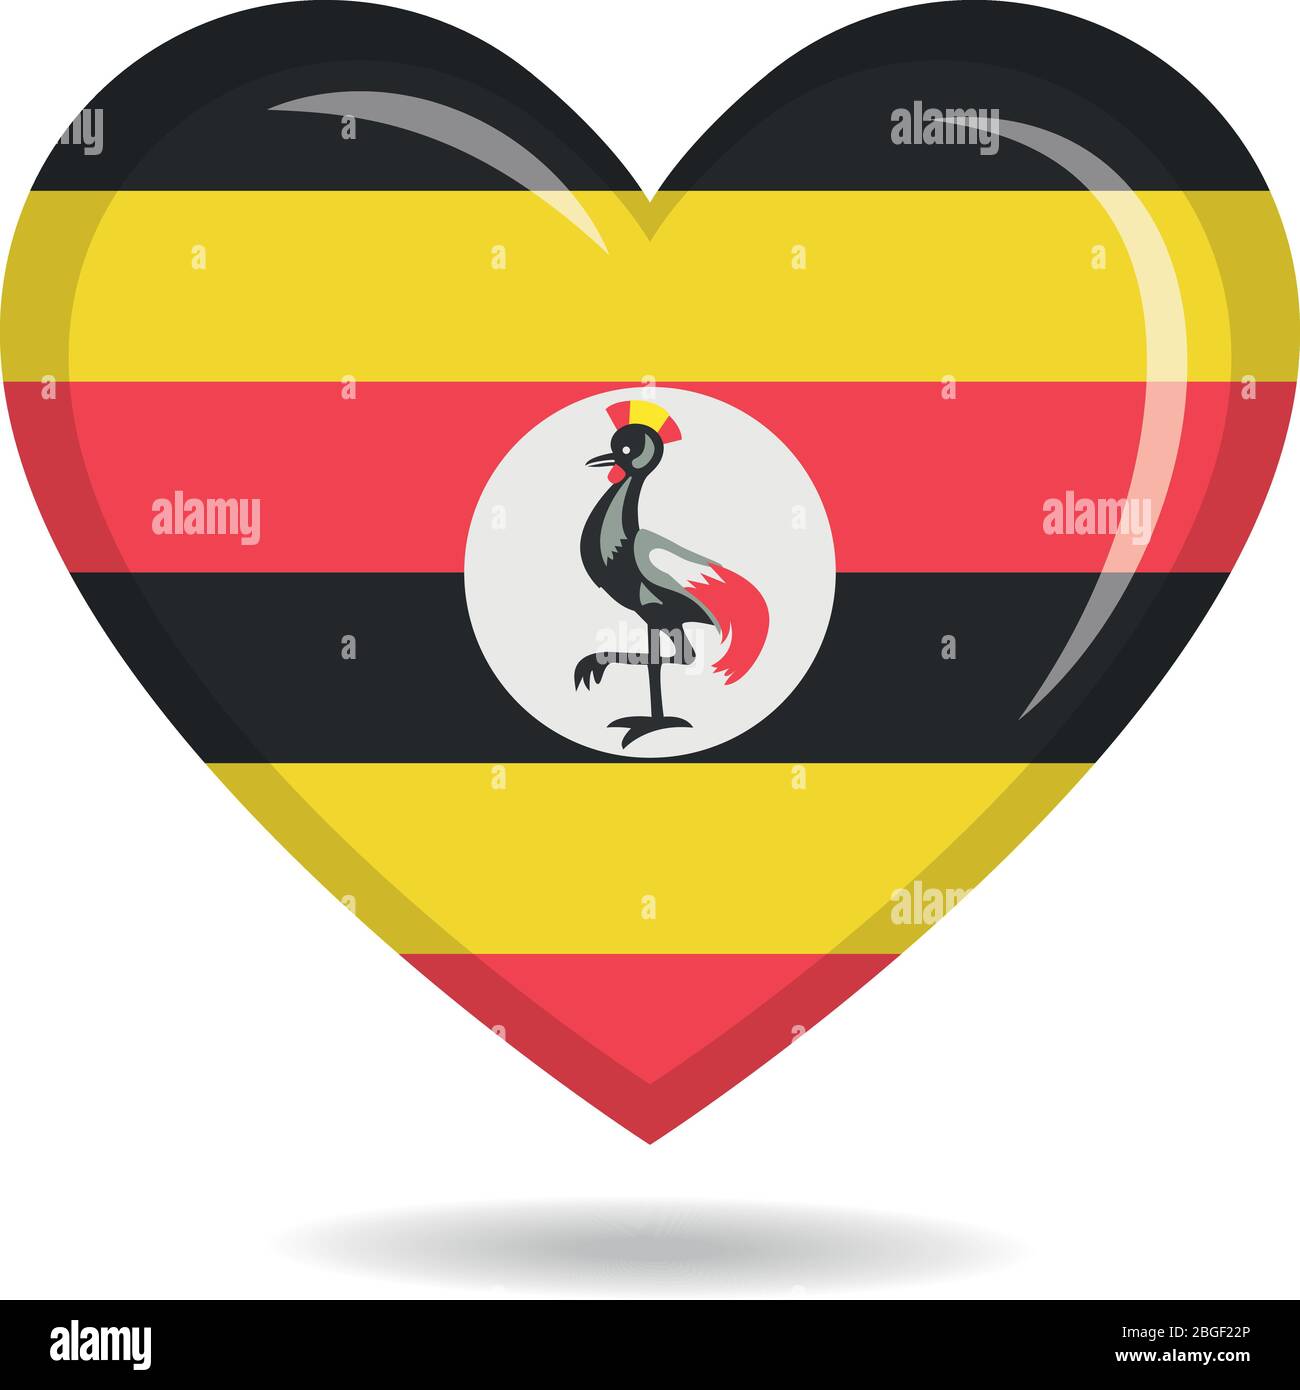 Uganda national flag in heart shape vector illustration Stock Vector